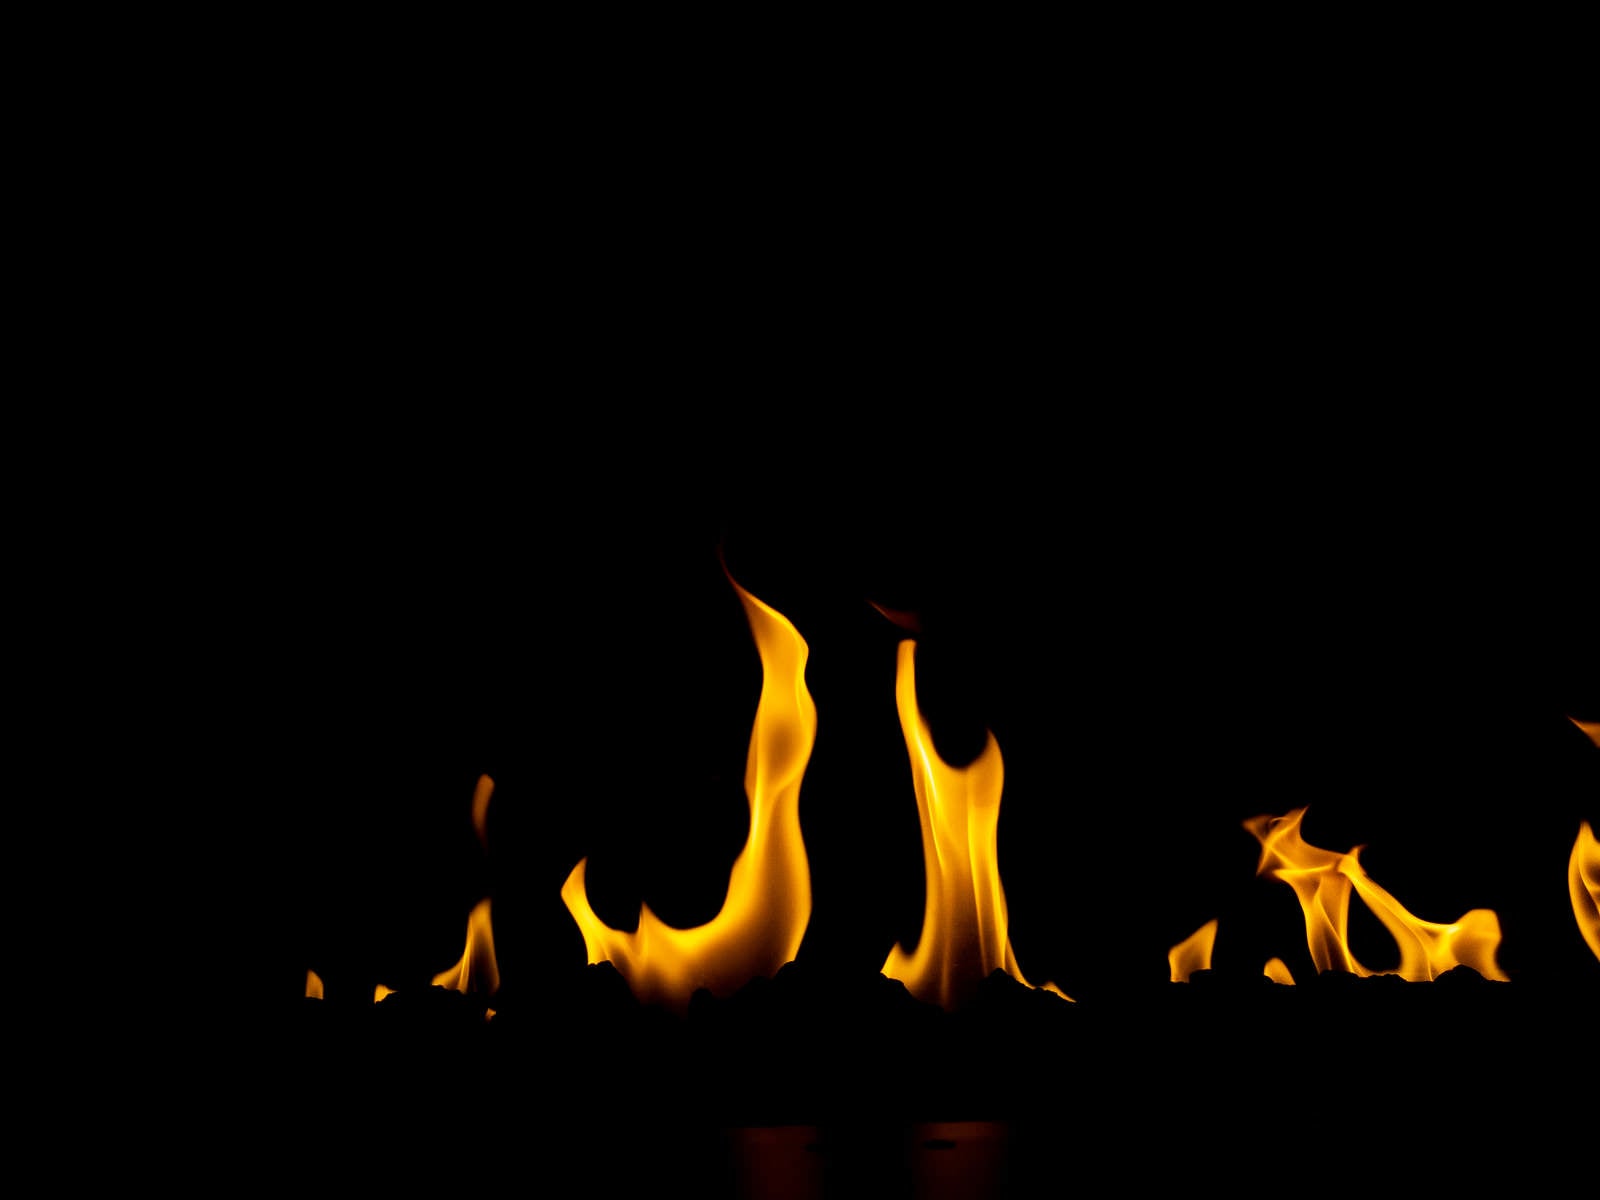 「暖炉の中で燃える炎の様子」の写真